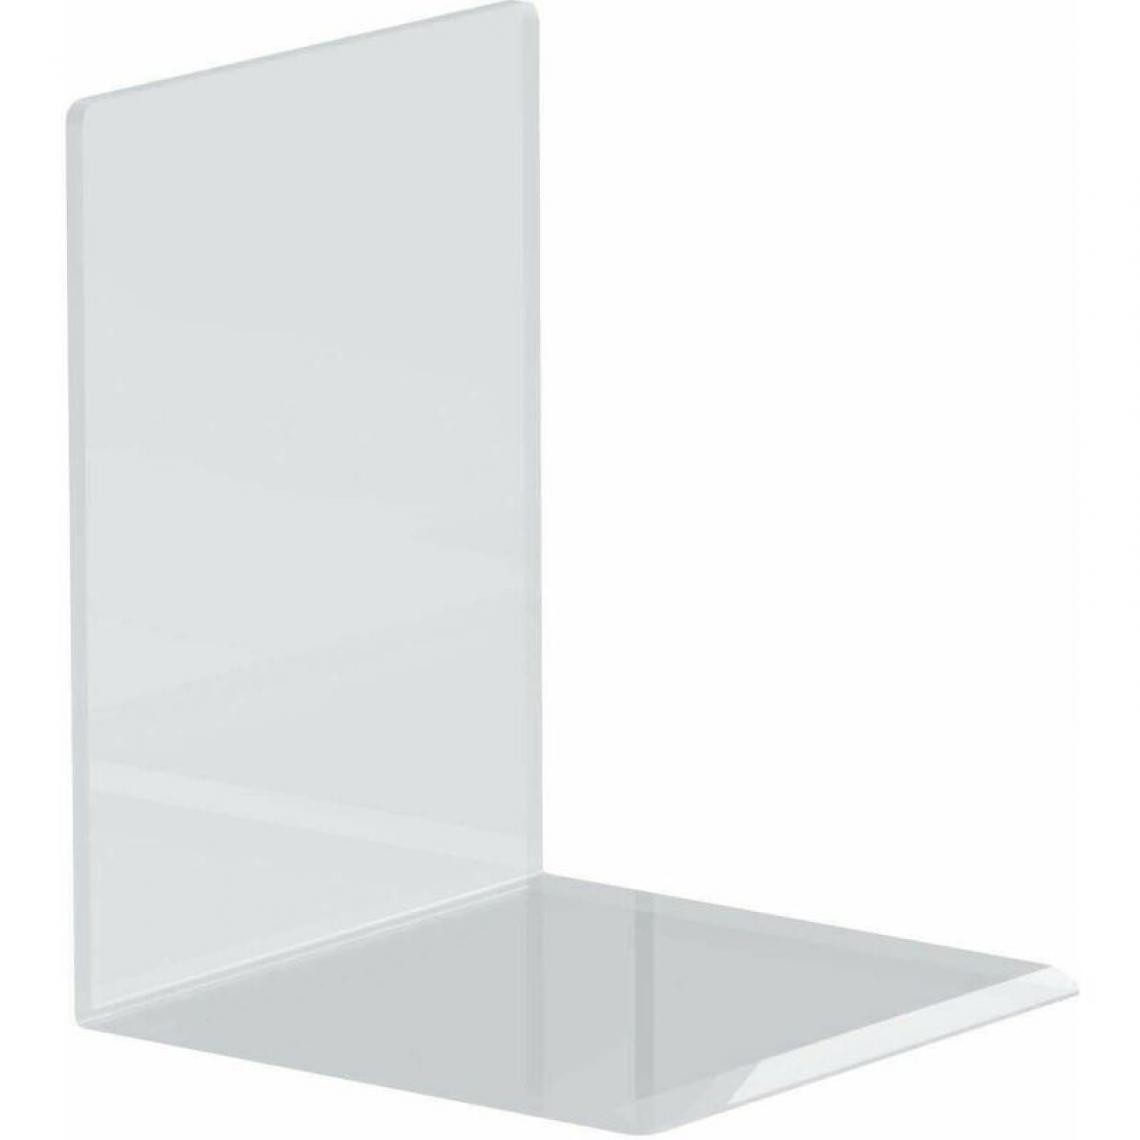 Maul - MAUL Serre-livres en acrylique, transparent, 100x100x130 mm () - Accessoires Bureau